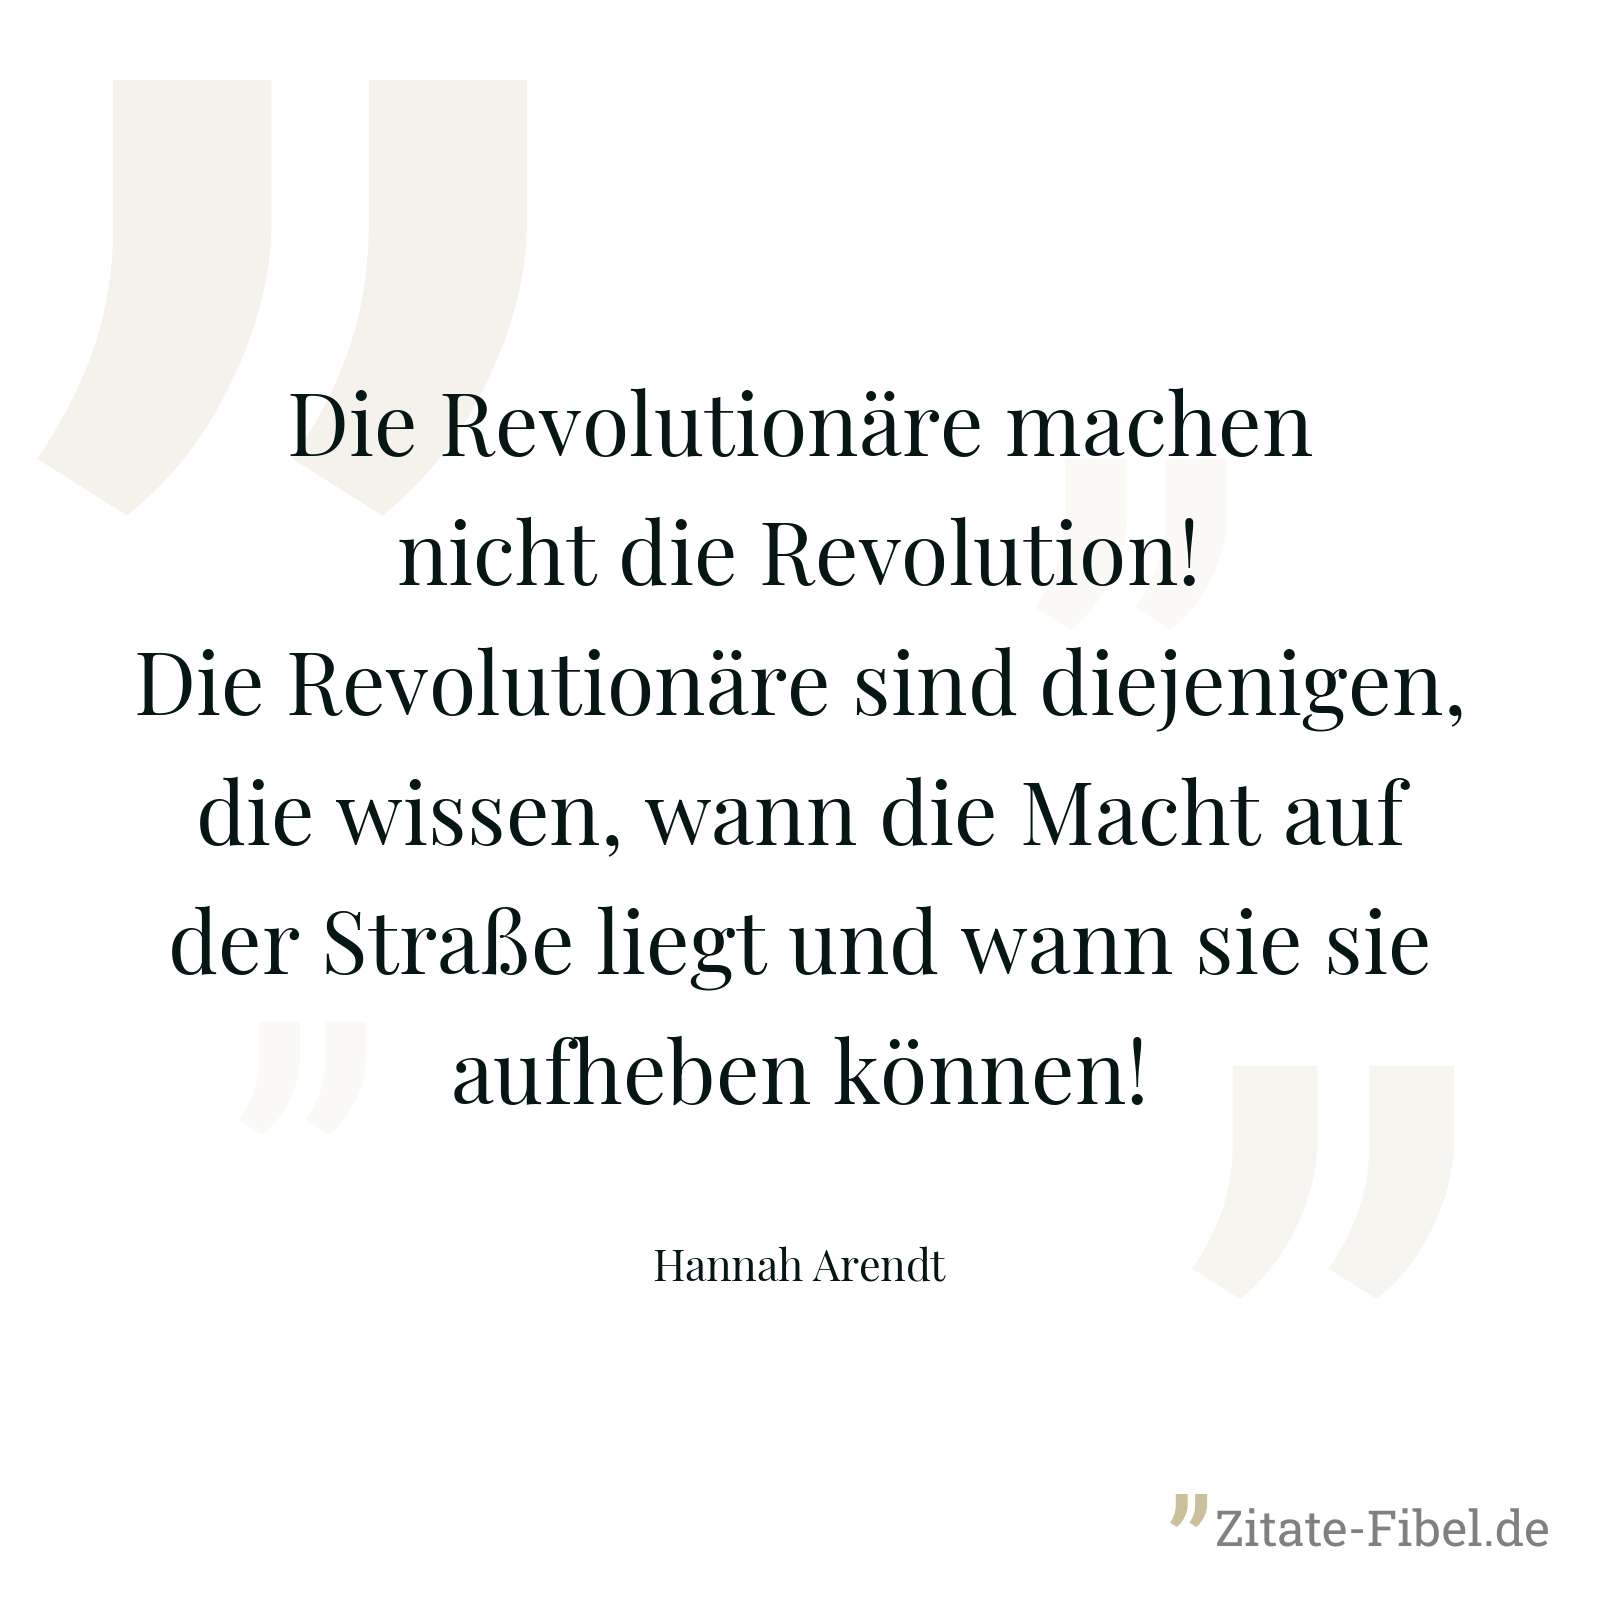 Die Revolutionäre machen nicht die Revolution! Die Revolutionäre sind diejenigen, die wissen, wann die Macht auf der Straße liegt und wann sie sie aufheben können! - Hannah Arendt